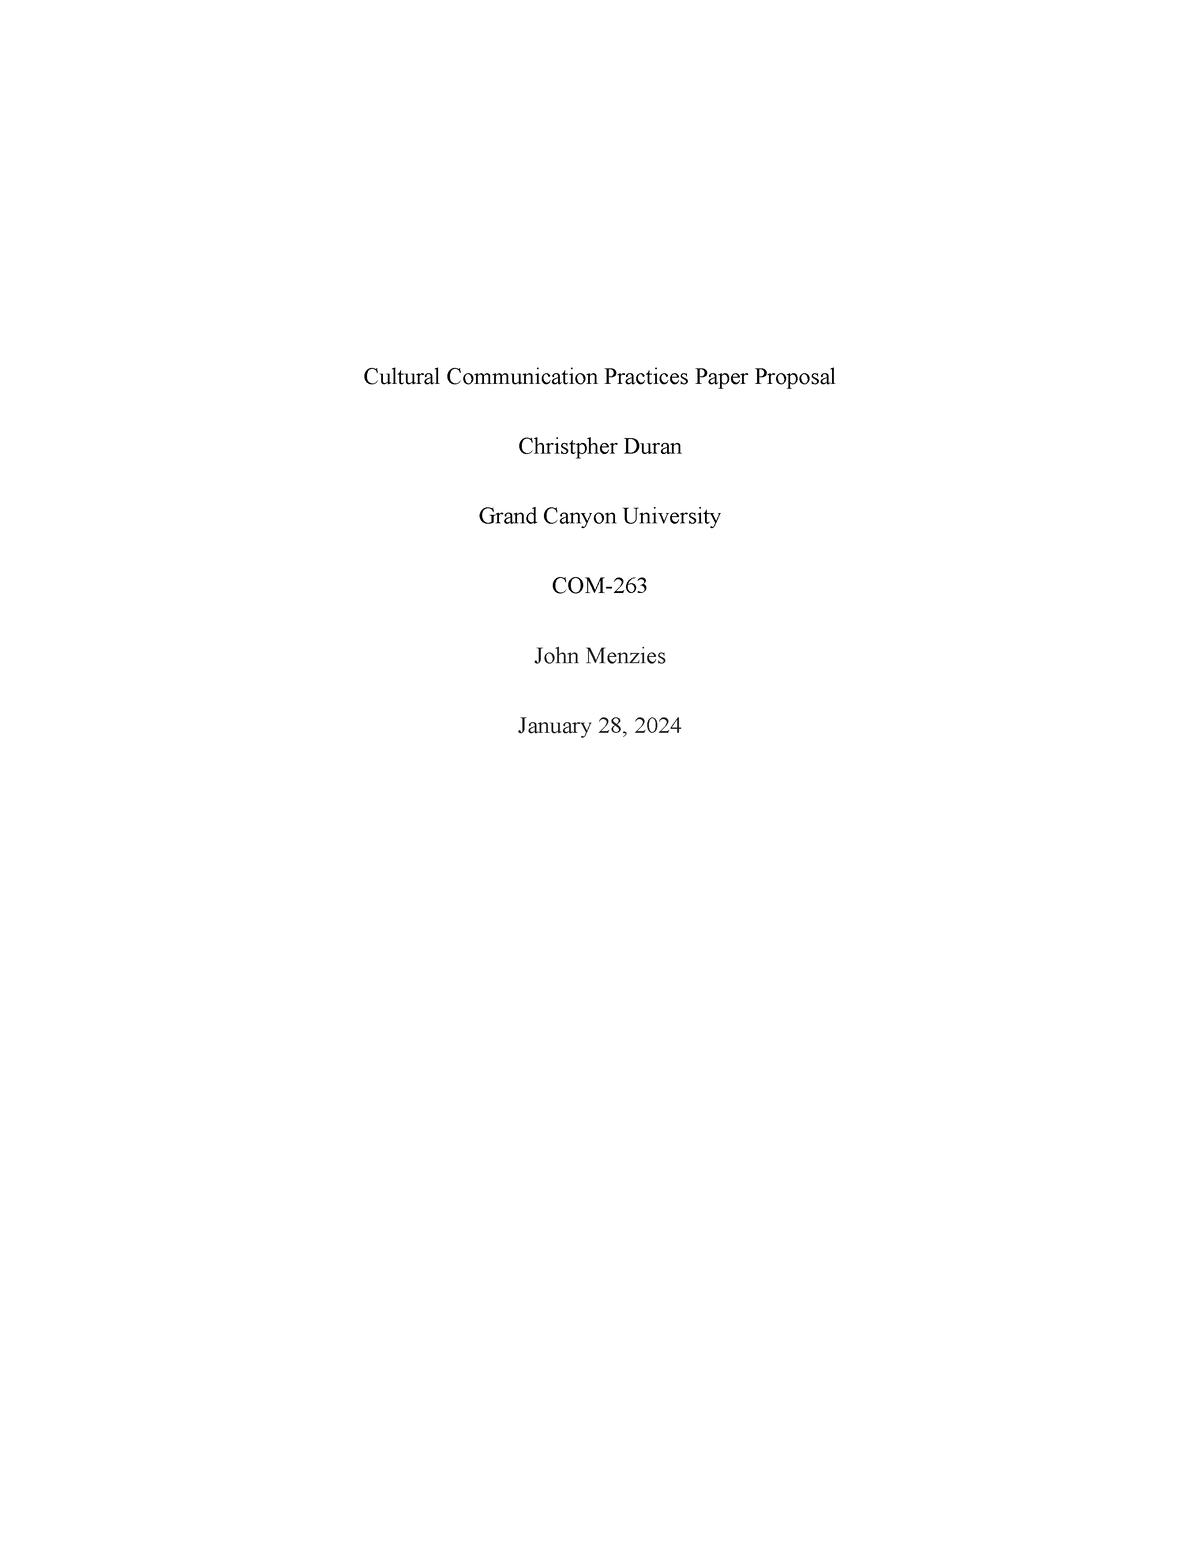 COM-263 Cultural Communications Practices Paper Proposal - Cultural ...